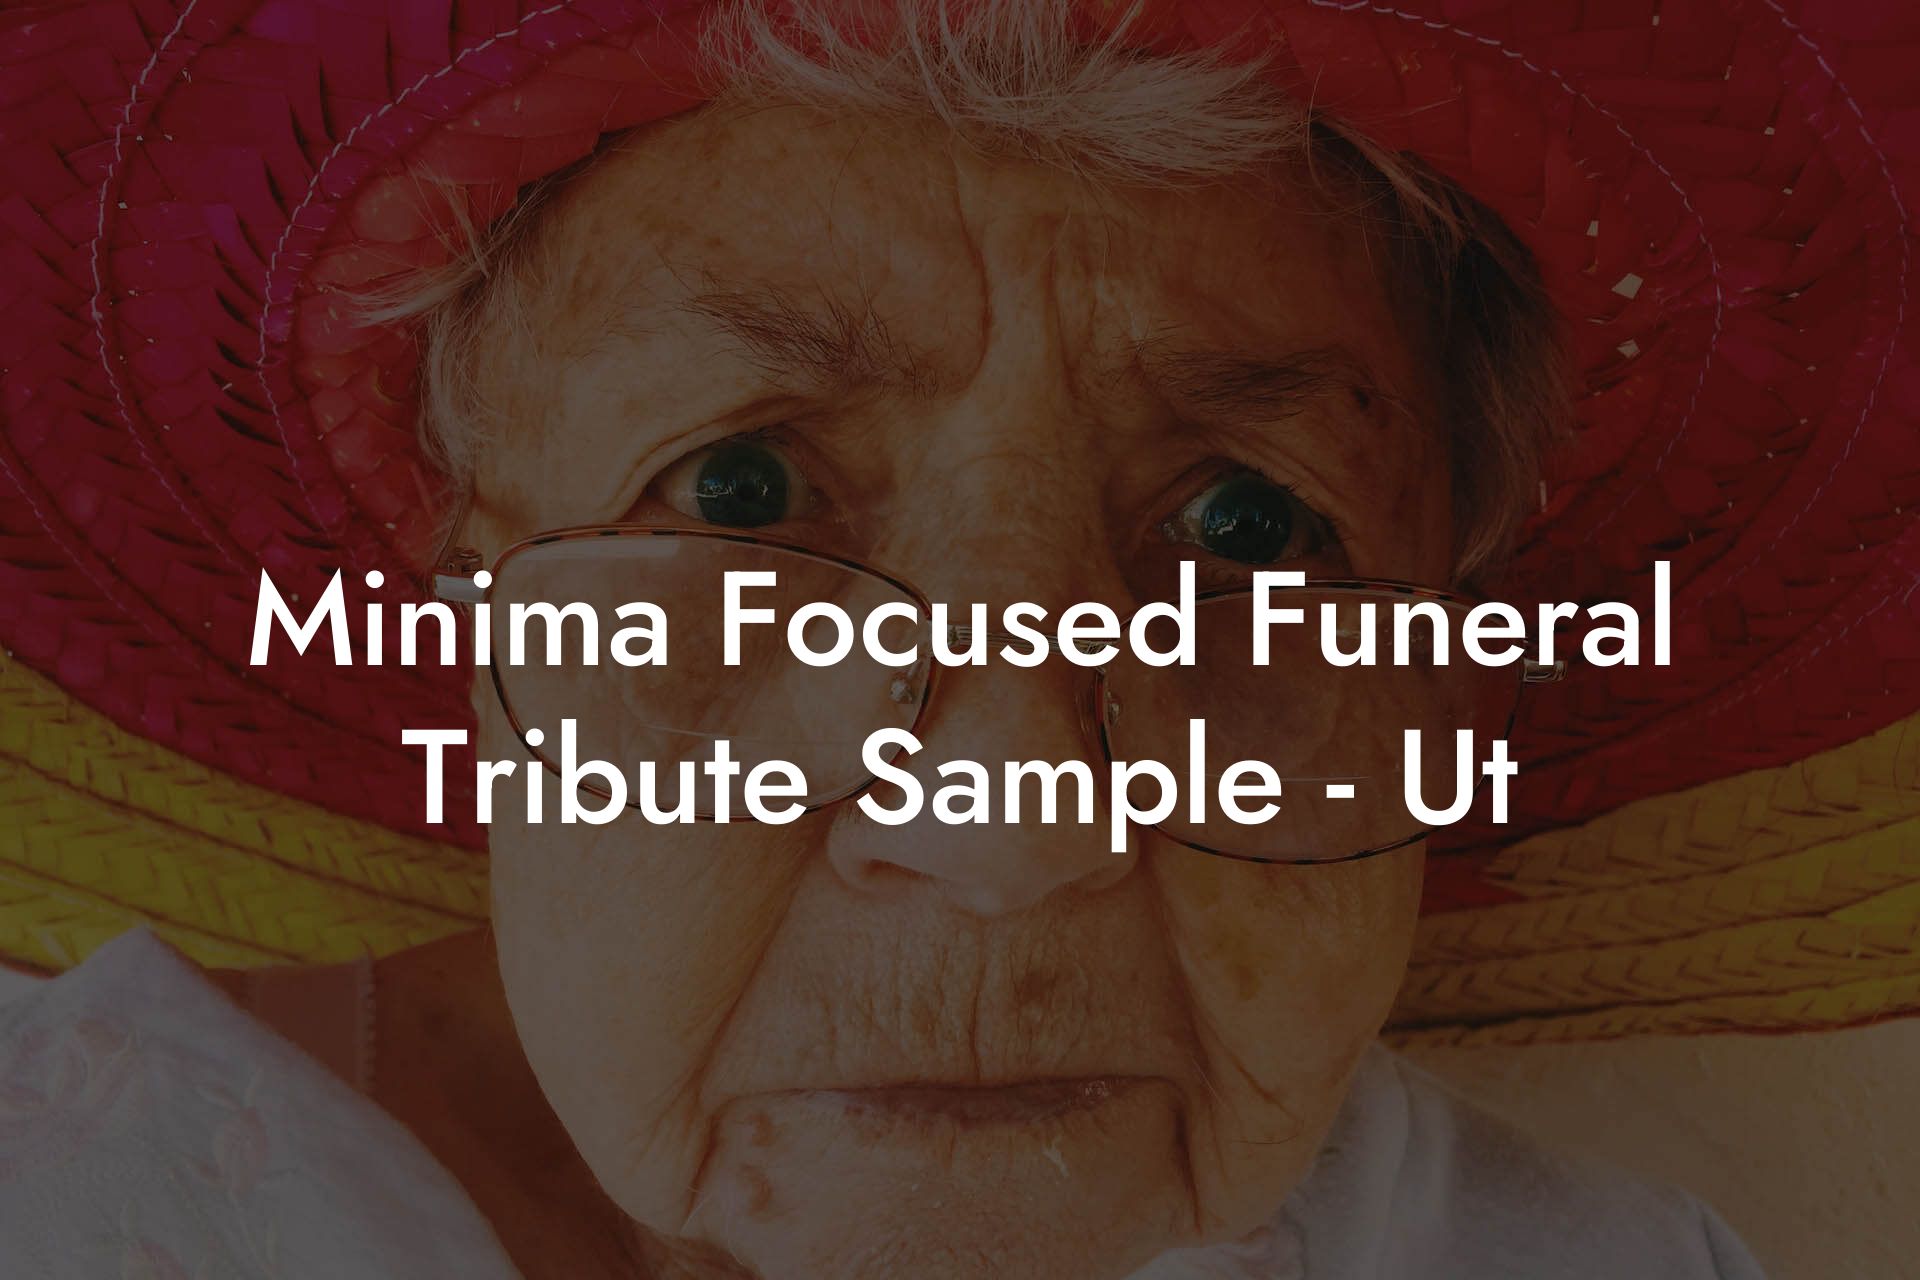 Minima Focused Funeral Tribute Sample - Ut